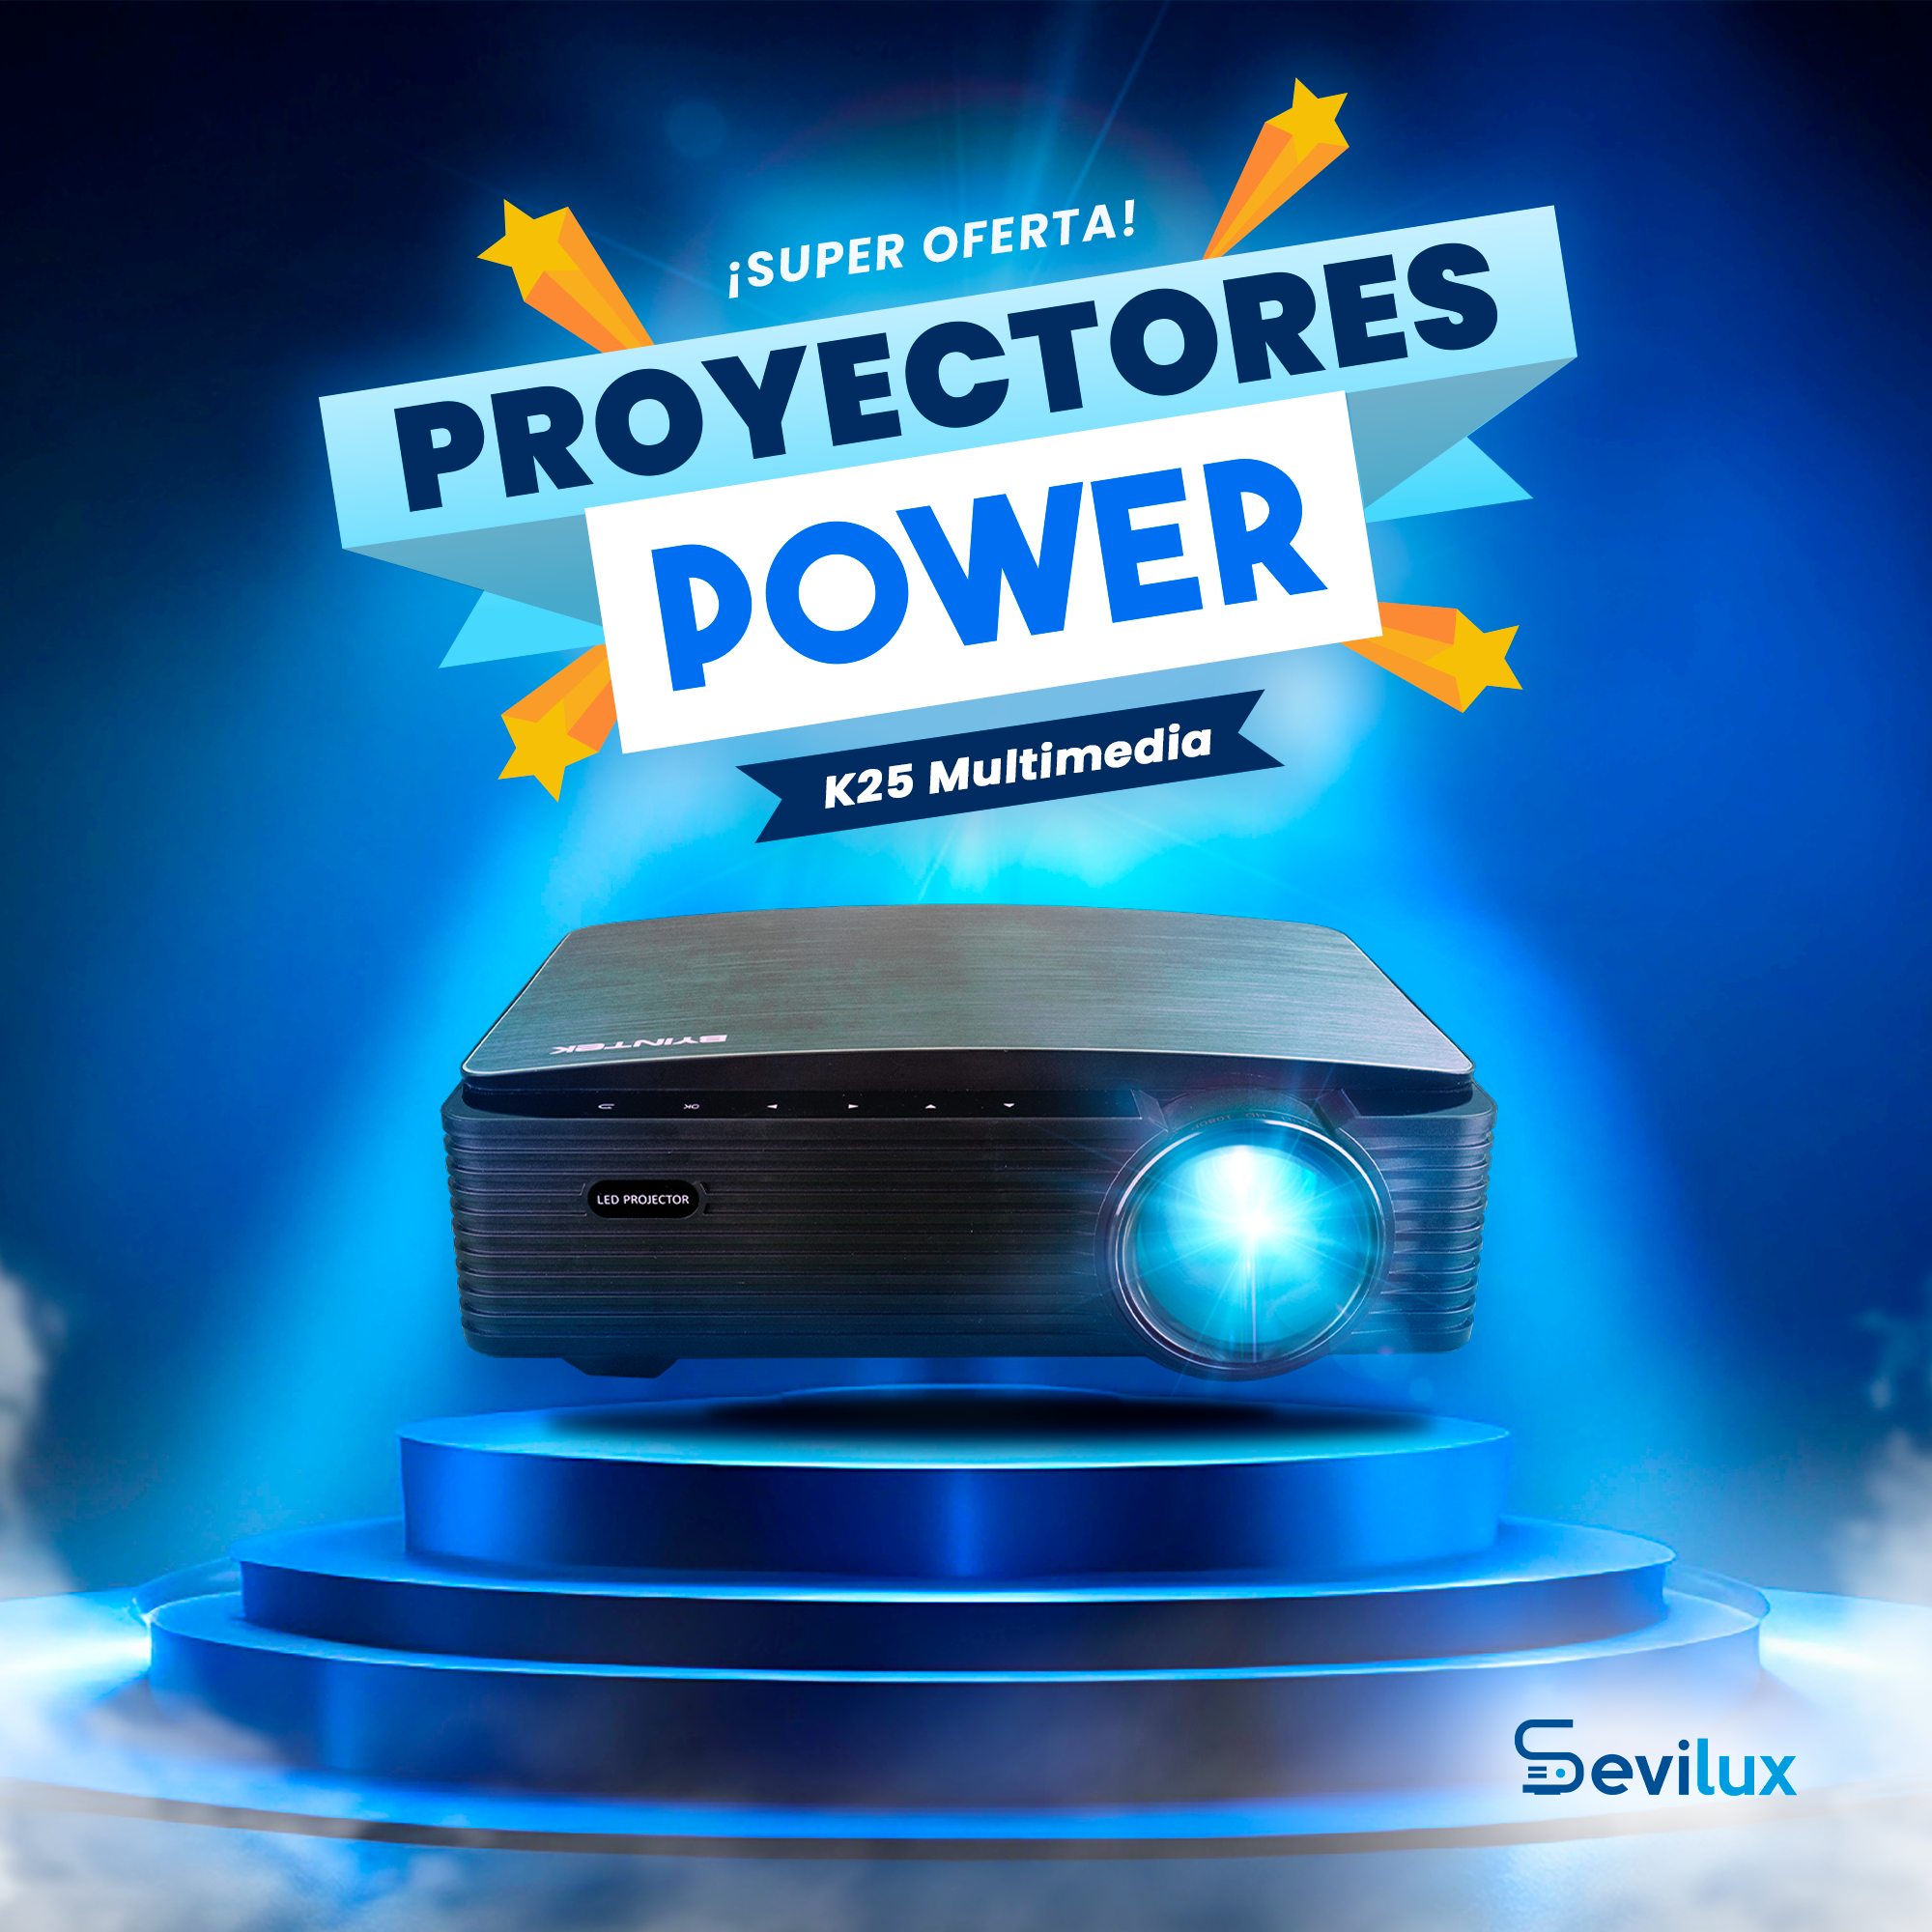 1 Proyector K25 multimedia Full HD | Proyectores Power 💪🏼